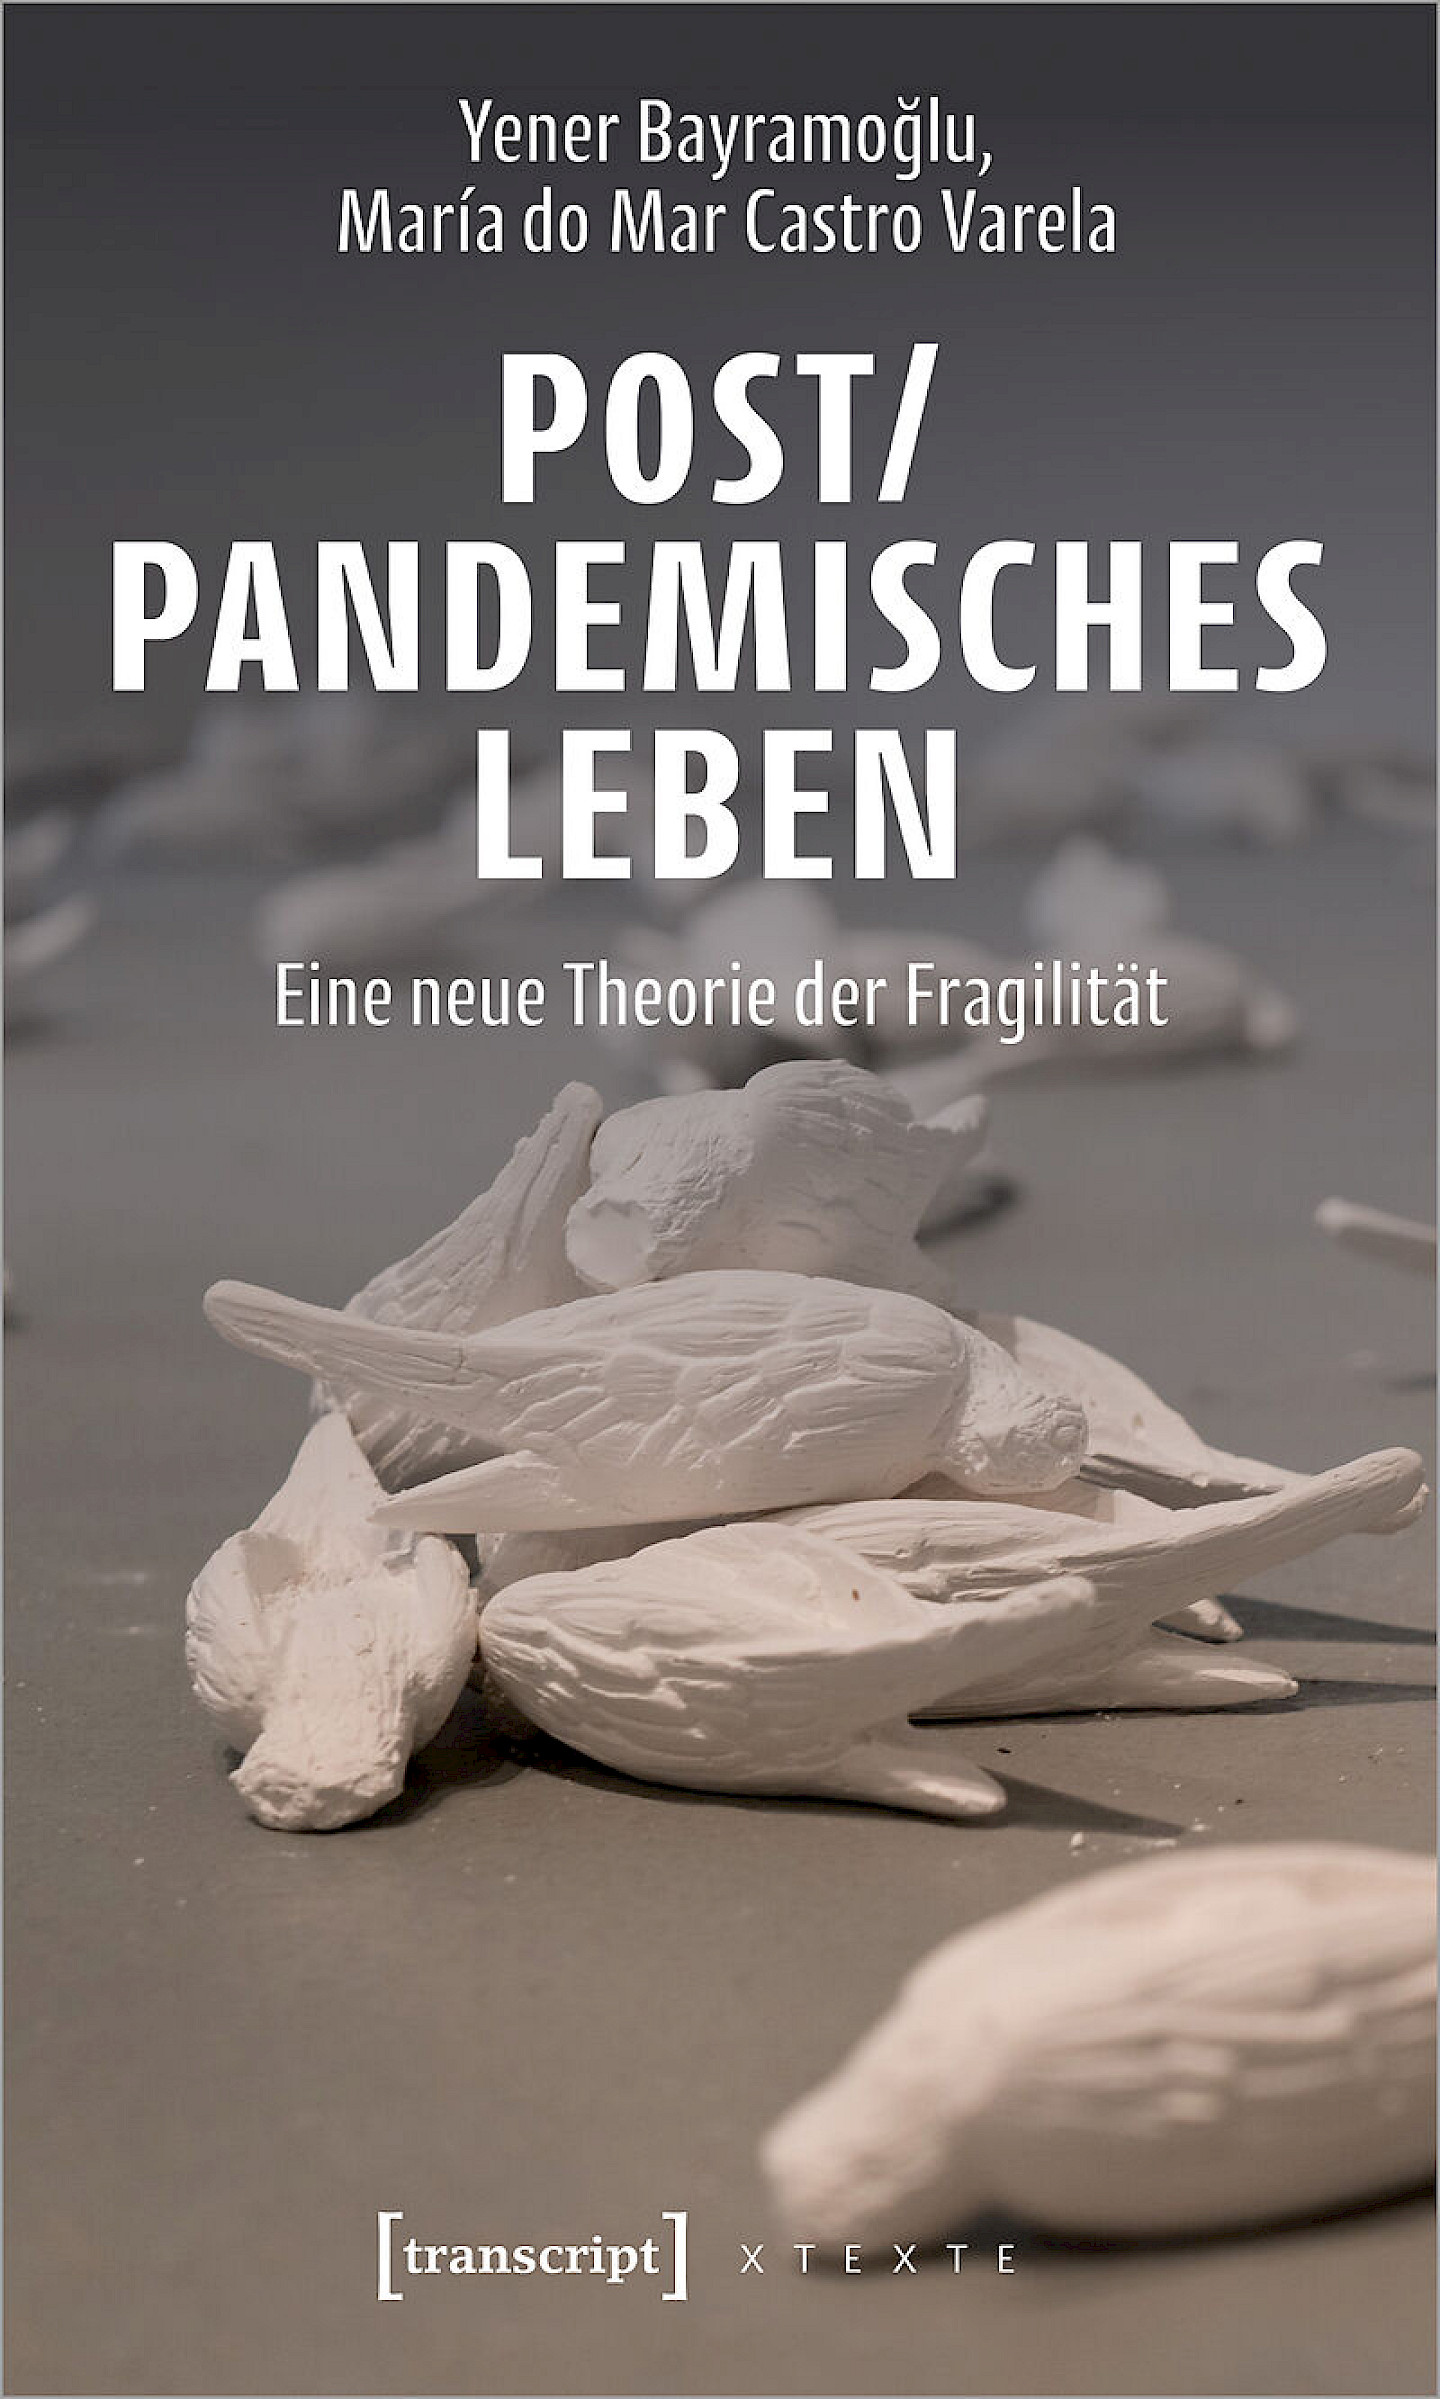 Post/pandemisches Leben – Eine neue Theorie der Fragilität